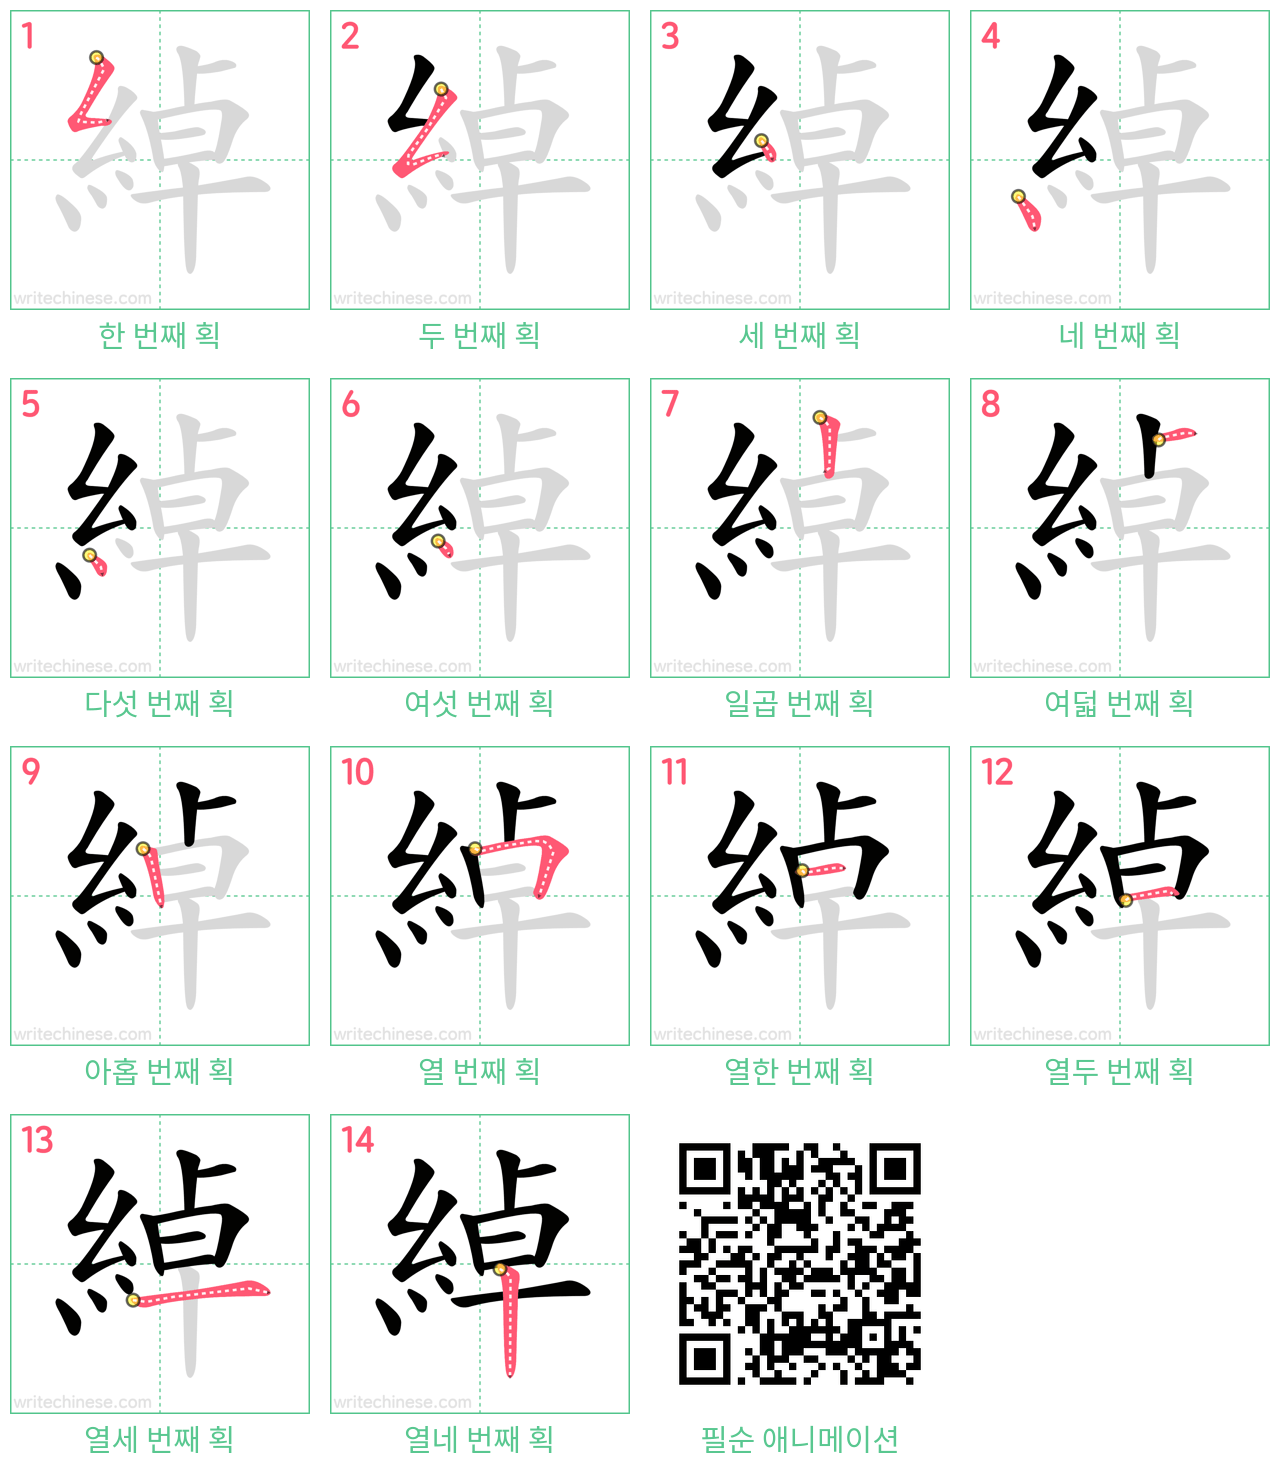 綽 step-by-step stroke order diagrams